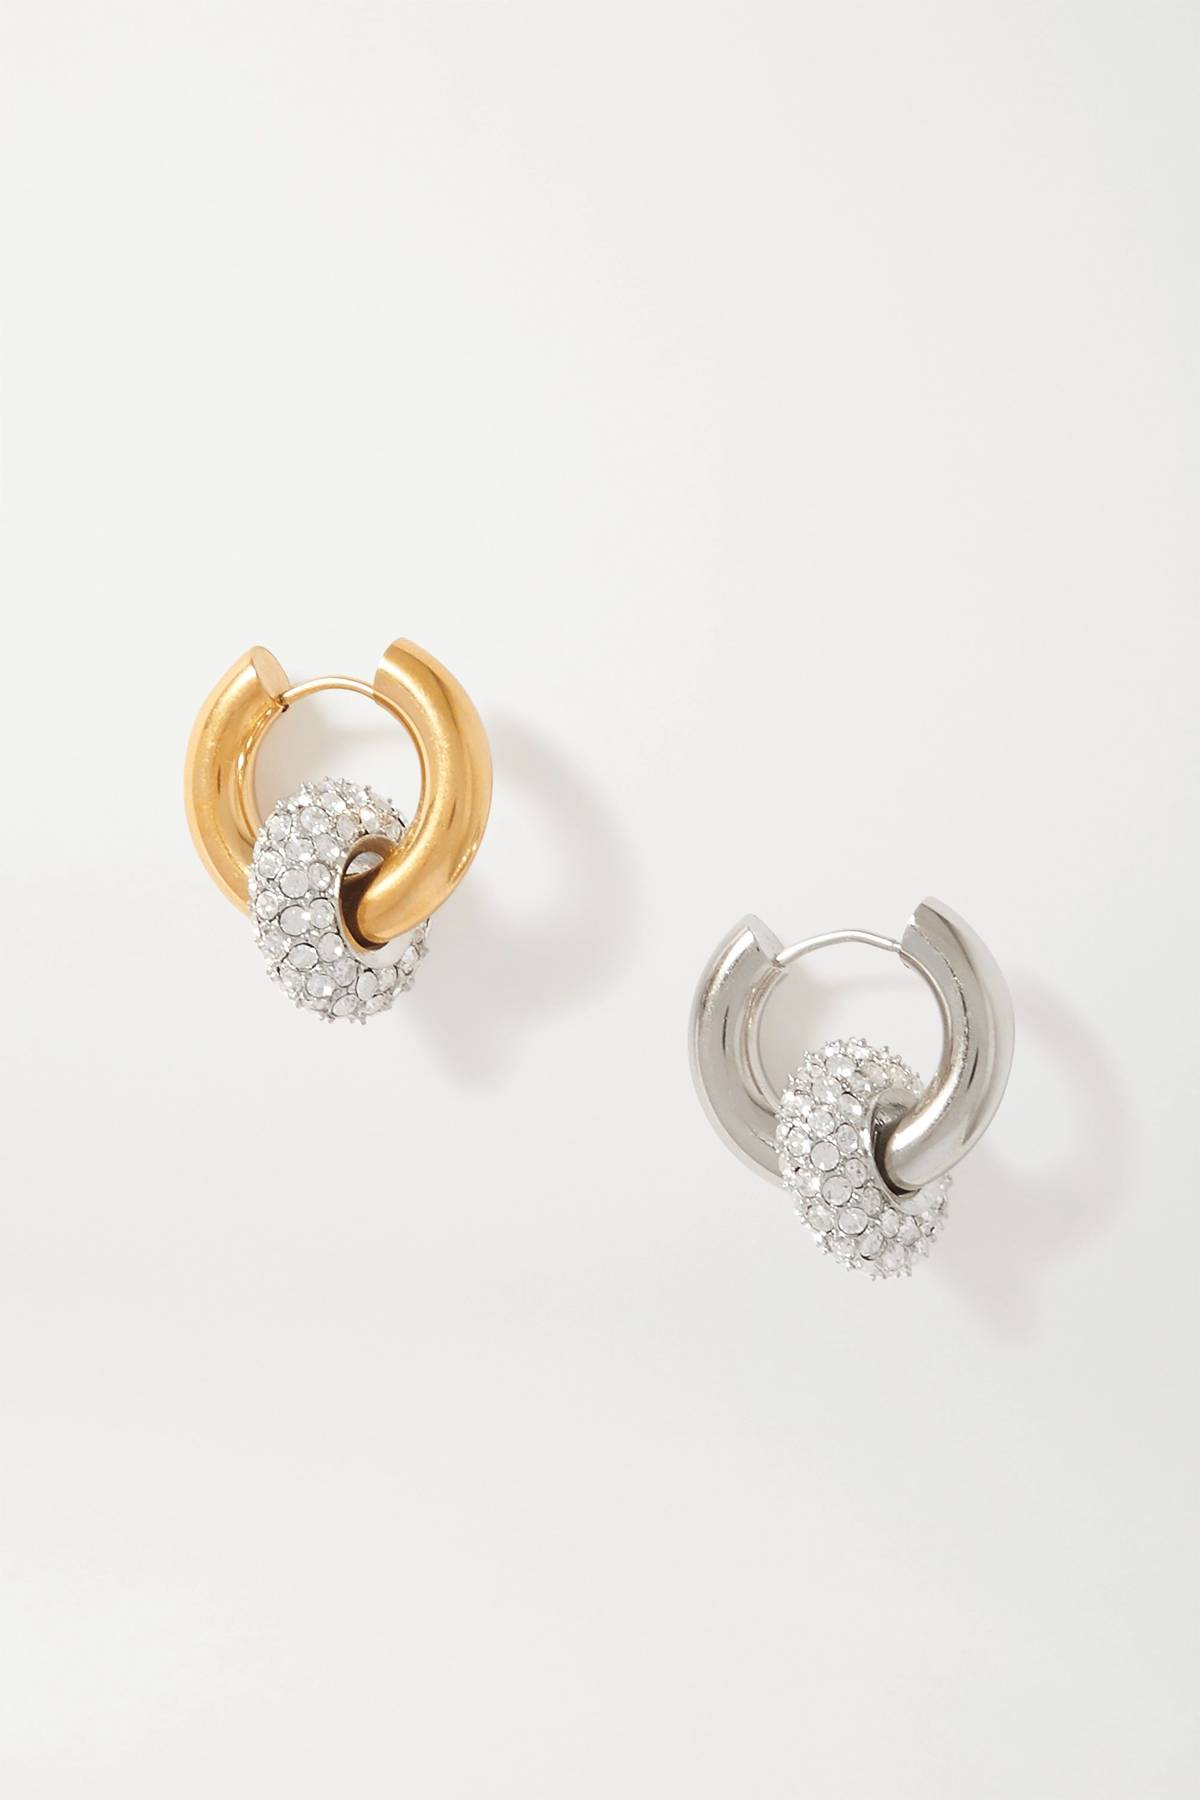 Một chiếc bông tai bằng vàng kết hợp cùng 1 chiếc bông tai bằng bạc vẫn có thể tạo nên 'cặp đôi hoàn hảo'.